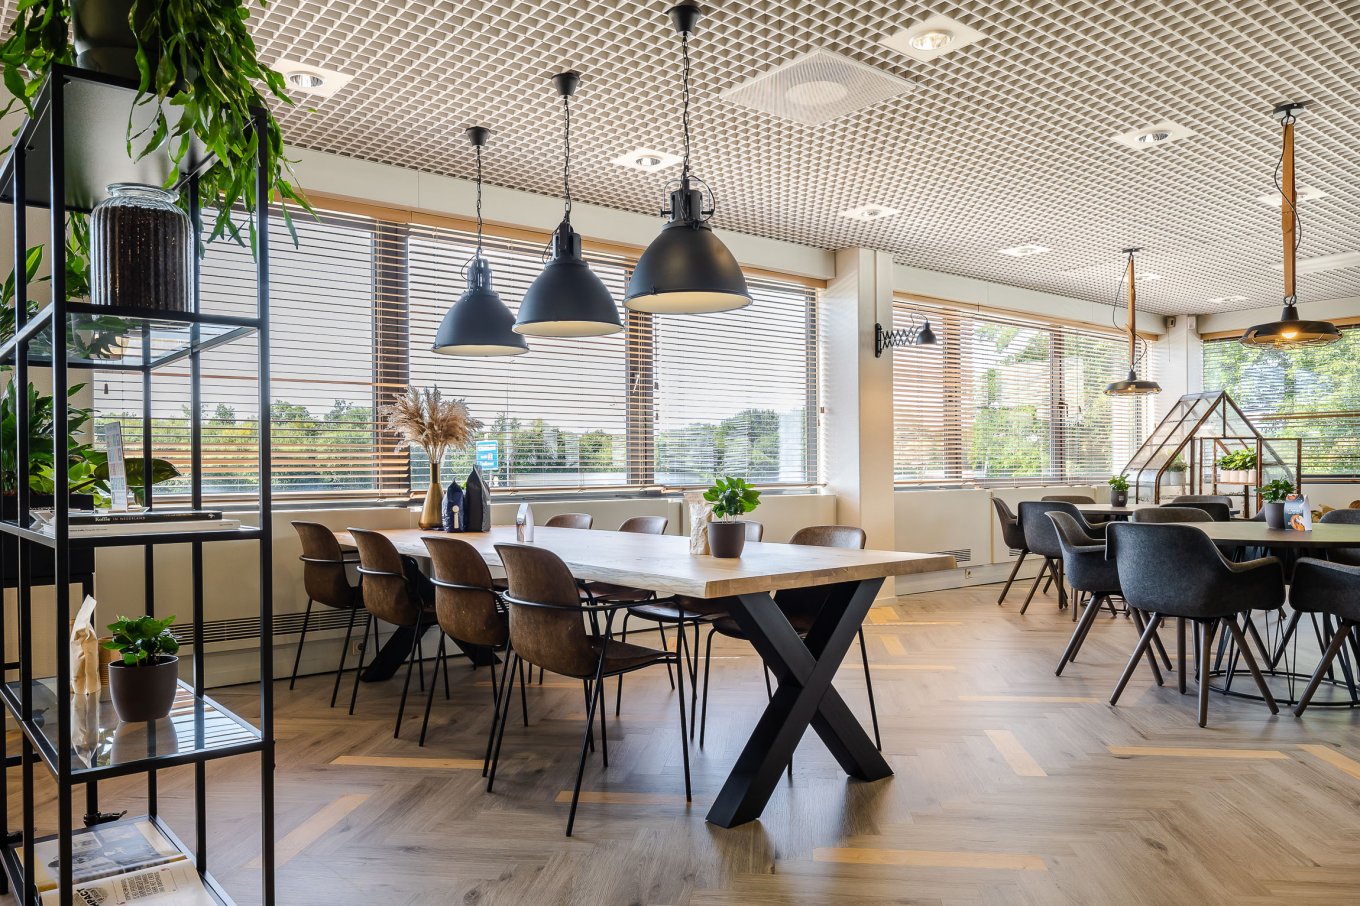 wineo Referenzobjekt | HR Maas PURLINE Bioboden Fischgrätverlegung Fußboden Bodenbelag moderne Einrichtung mit Holztisch und Stühlen